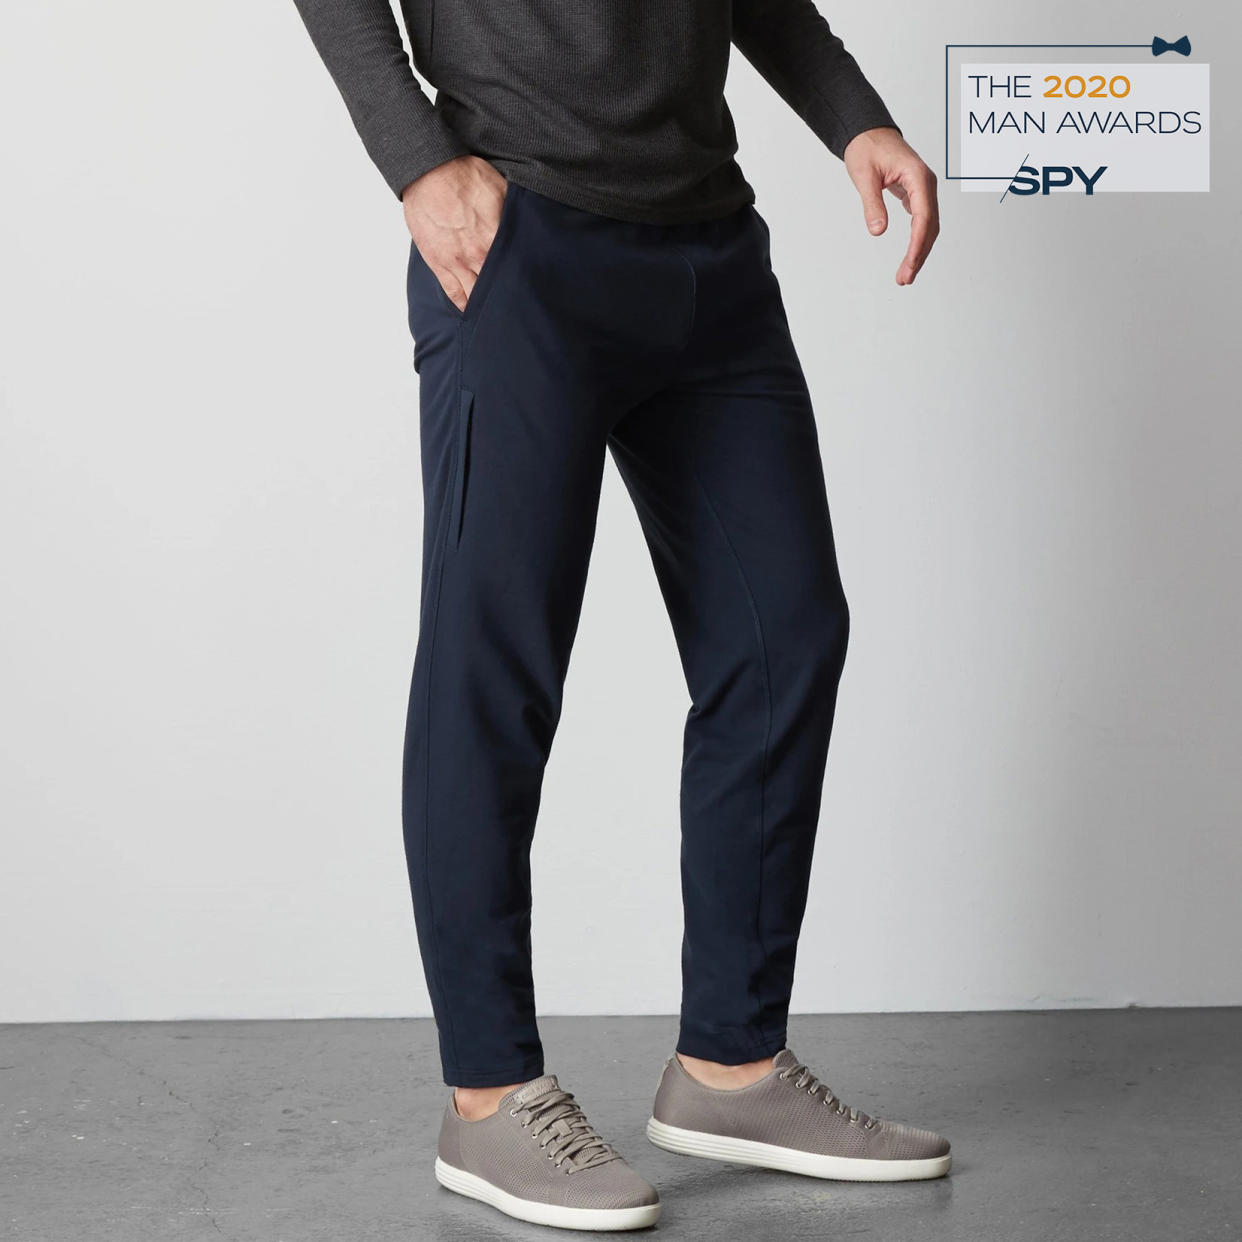 Ace Sweatpants, best men's products of 2022, men's joggers